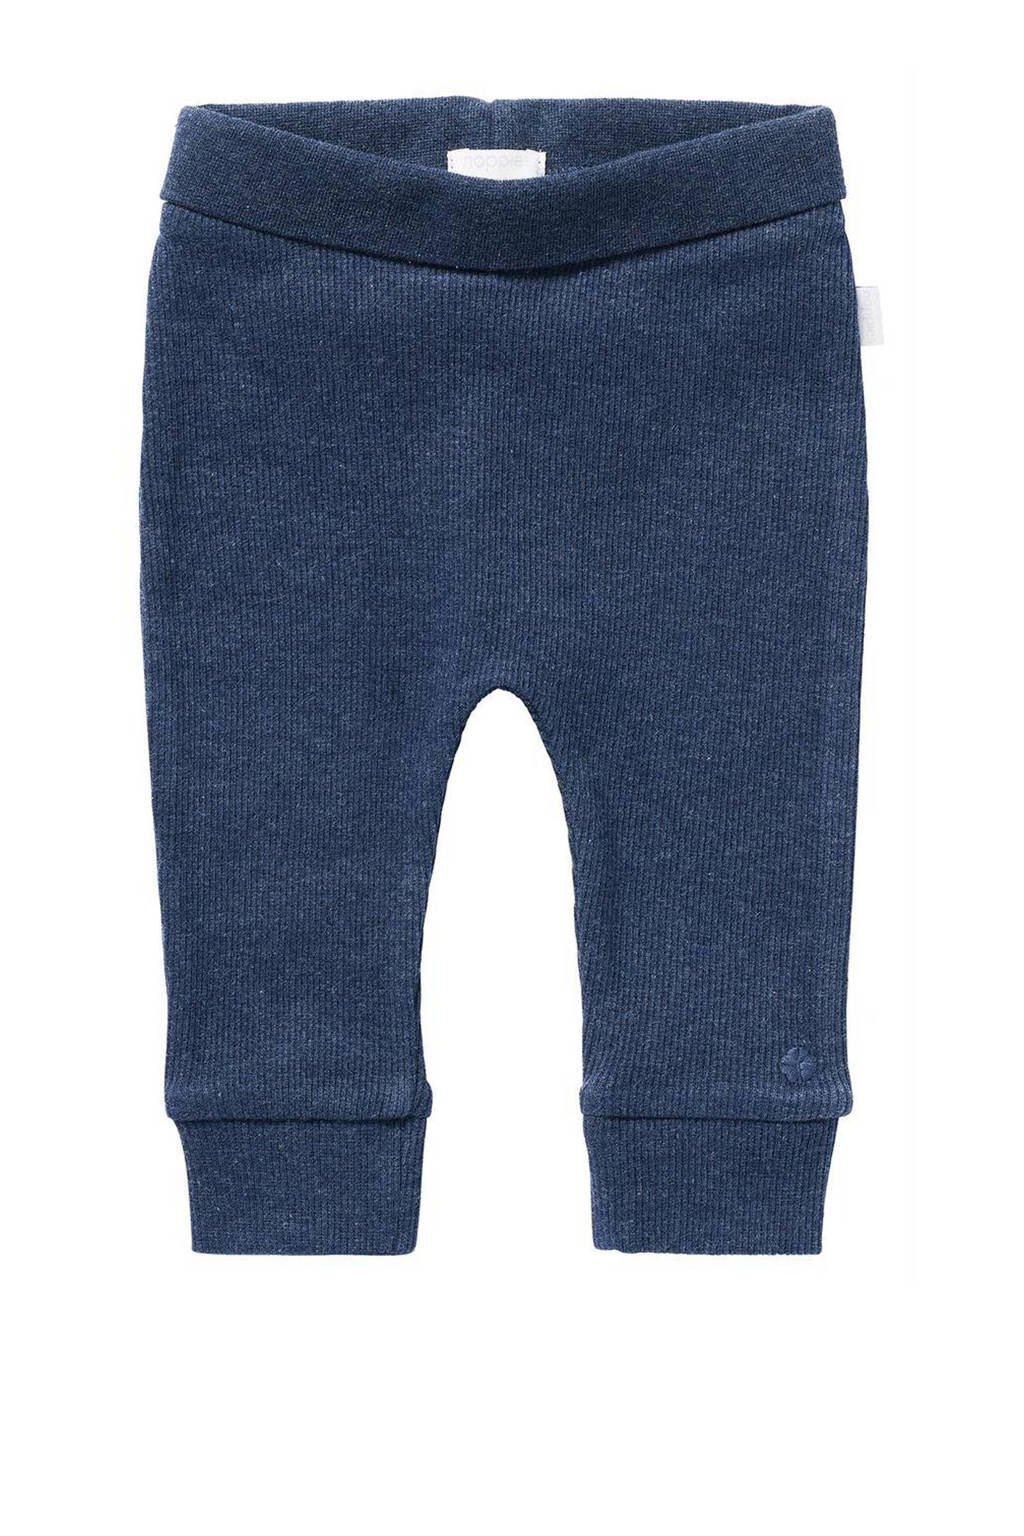 Donkerblauwe jongens Noppies baby broek Naura katoen met elastische tailleband